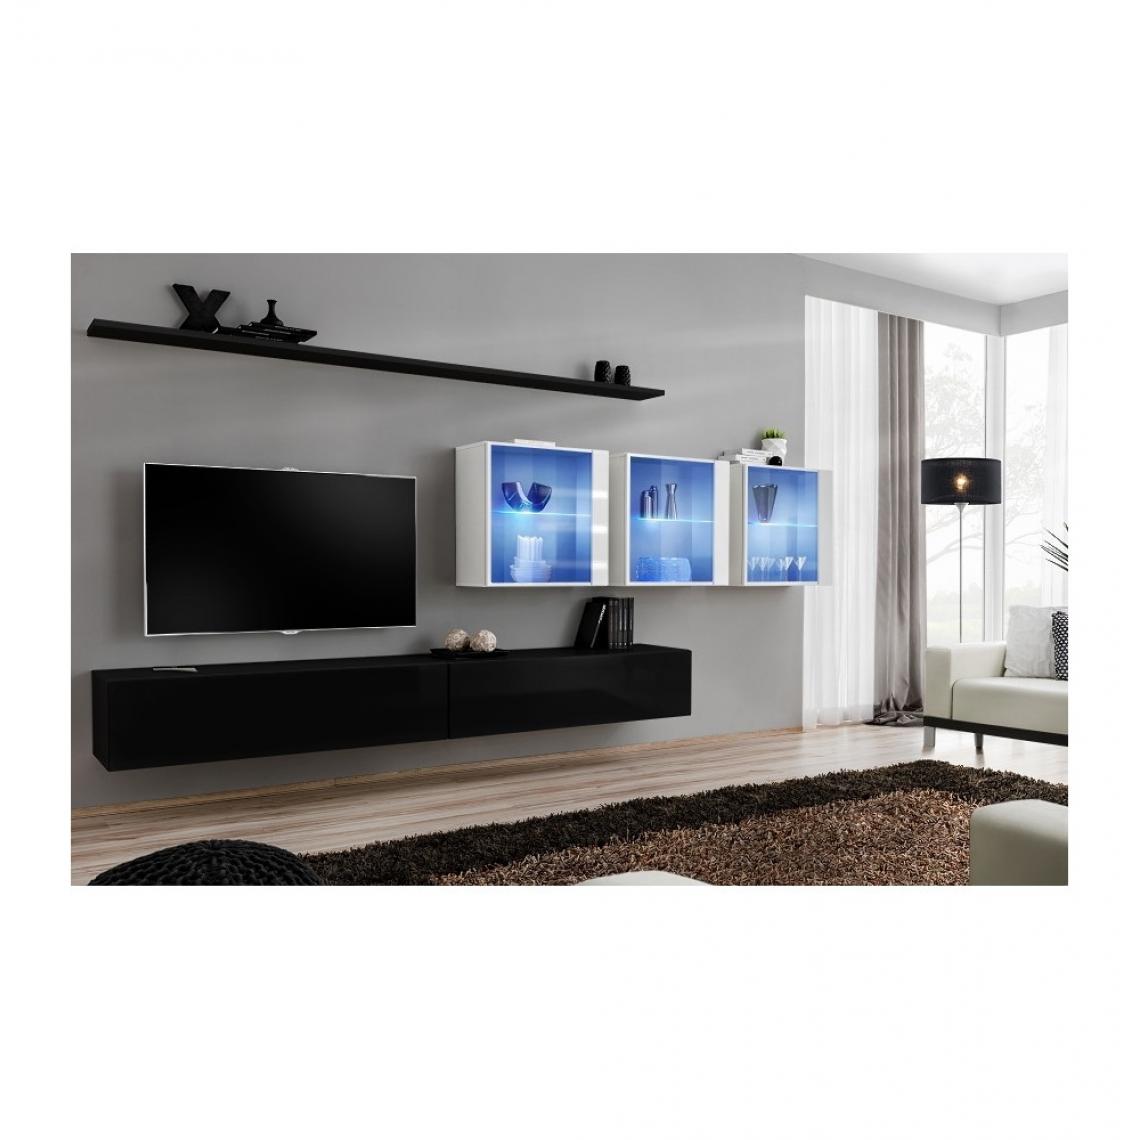 Ac-Deco - Ensemble meuble TV mural - Switch XVII - 340 cm x 150 cm x 40 cm - Noir et blanc - Meubles TV, Hi-Fi